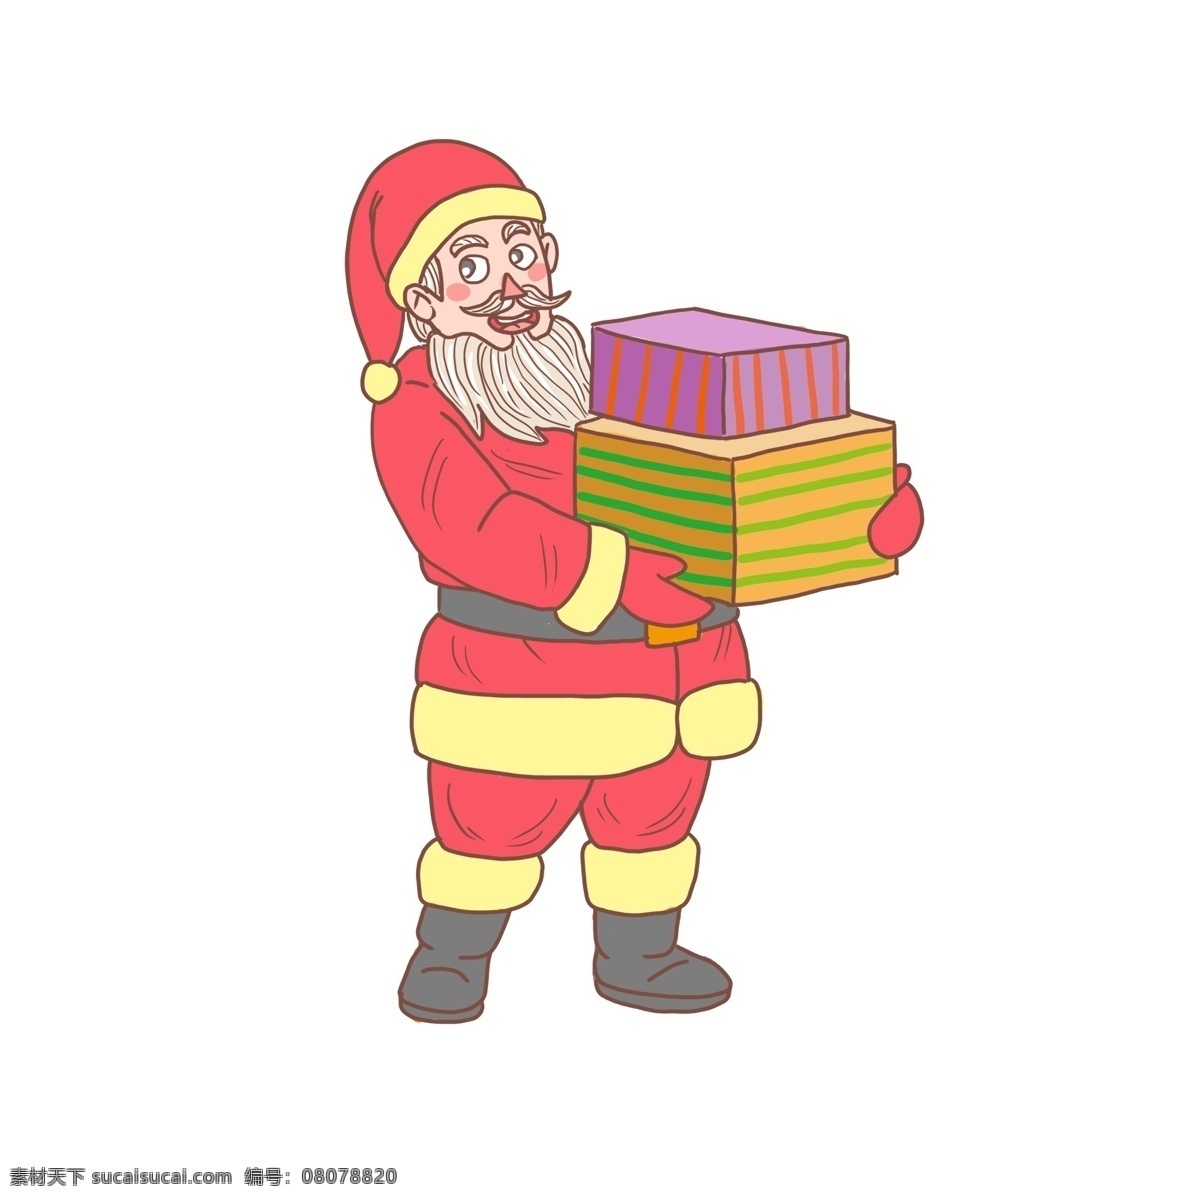 圣诞老人 卡通 手绘 圣诞节 圣诞节礼物 圣诞节老头